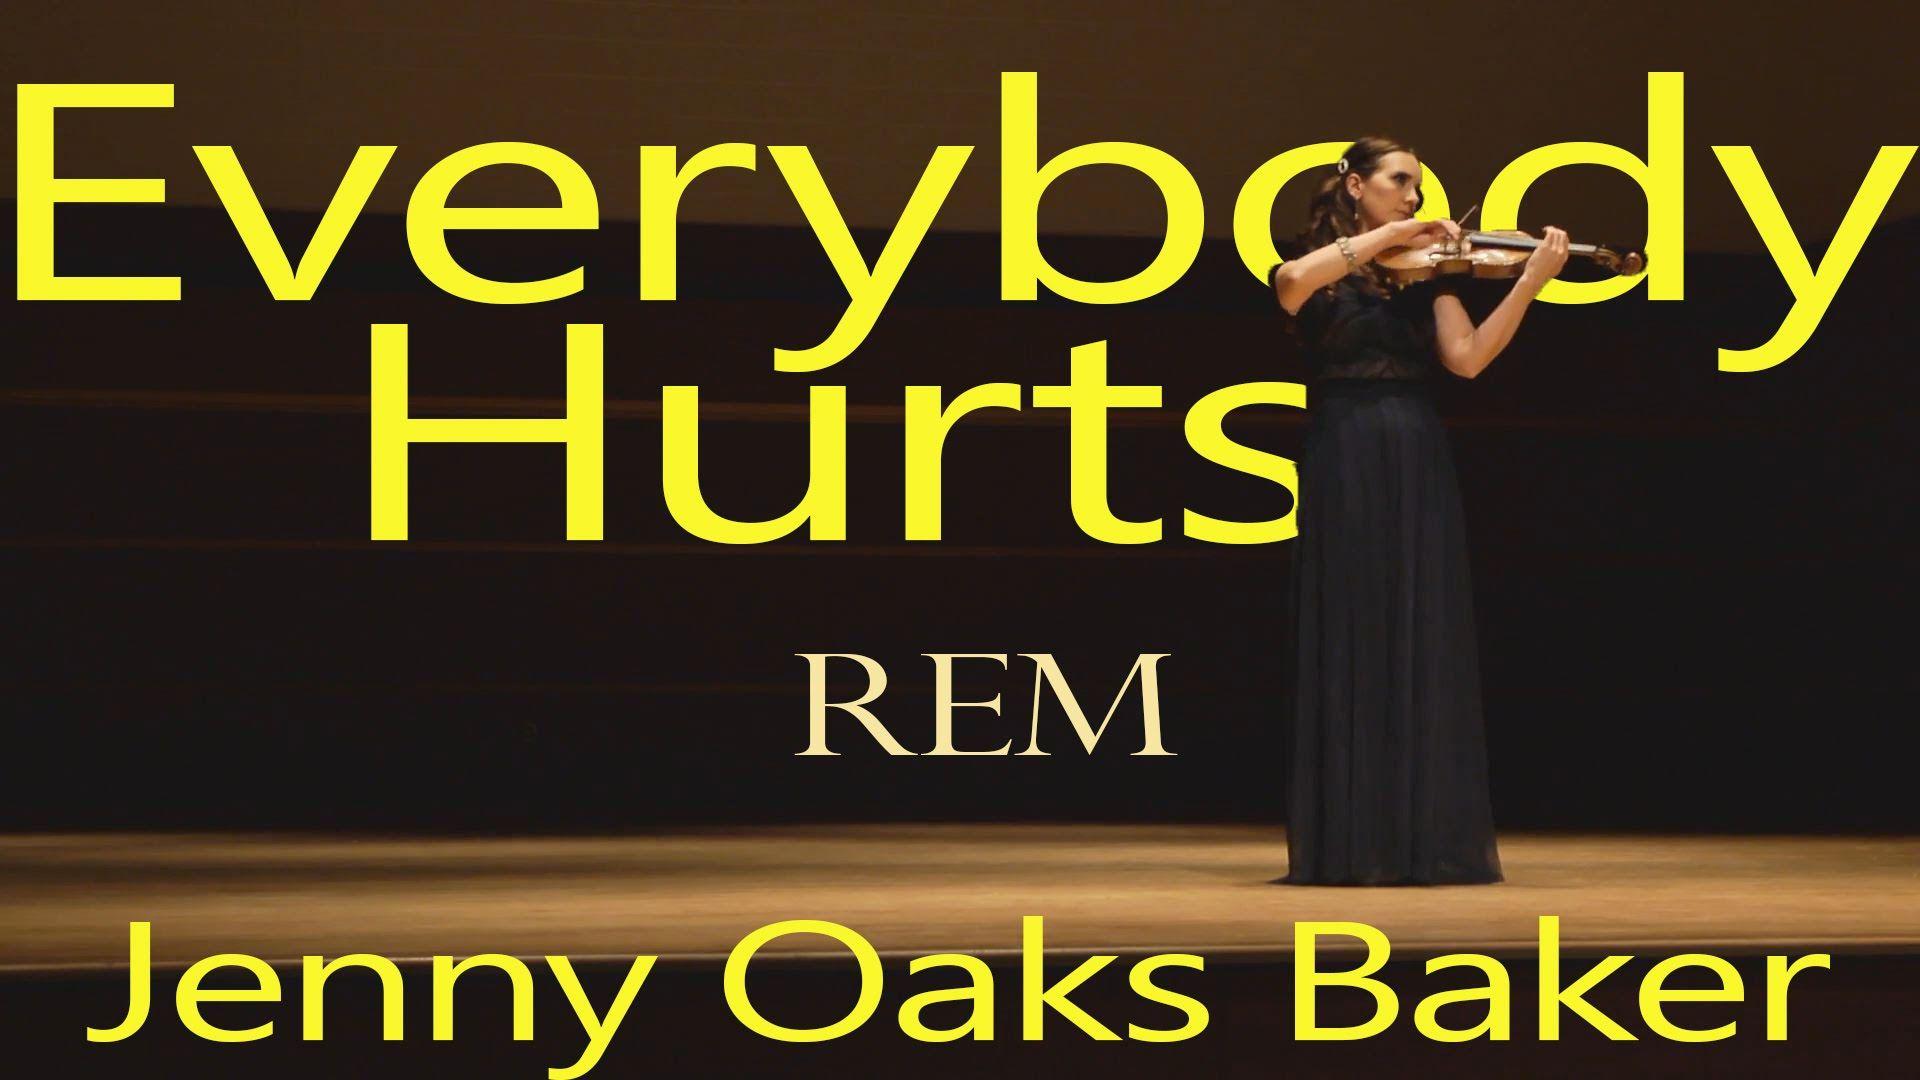 Everybody hurts. Jennifer hurt. Jenny Oaks Baker & Family four. Jenny Oaks Baker o Fortuna. Jenny Oaks Baker Shariot of Fire.